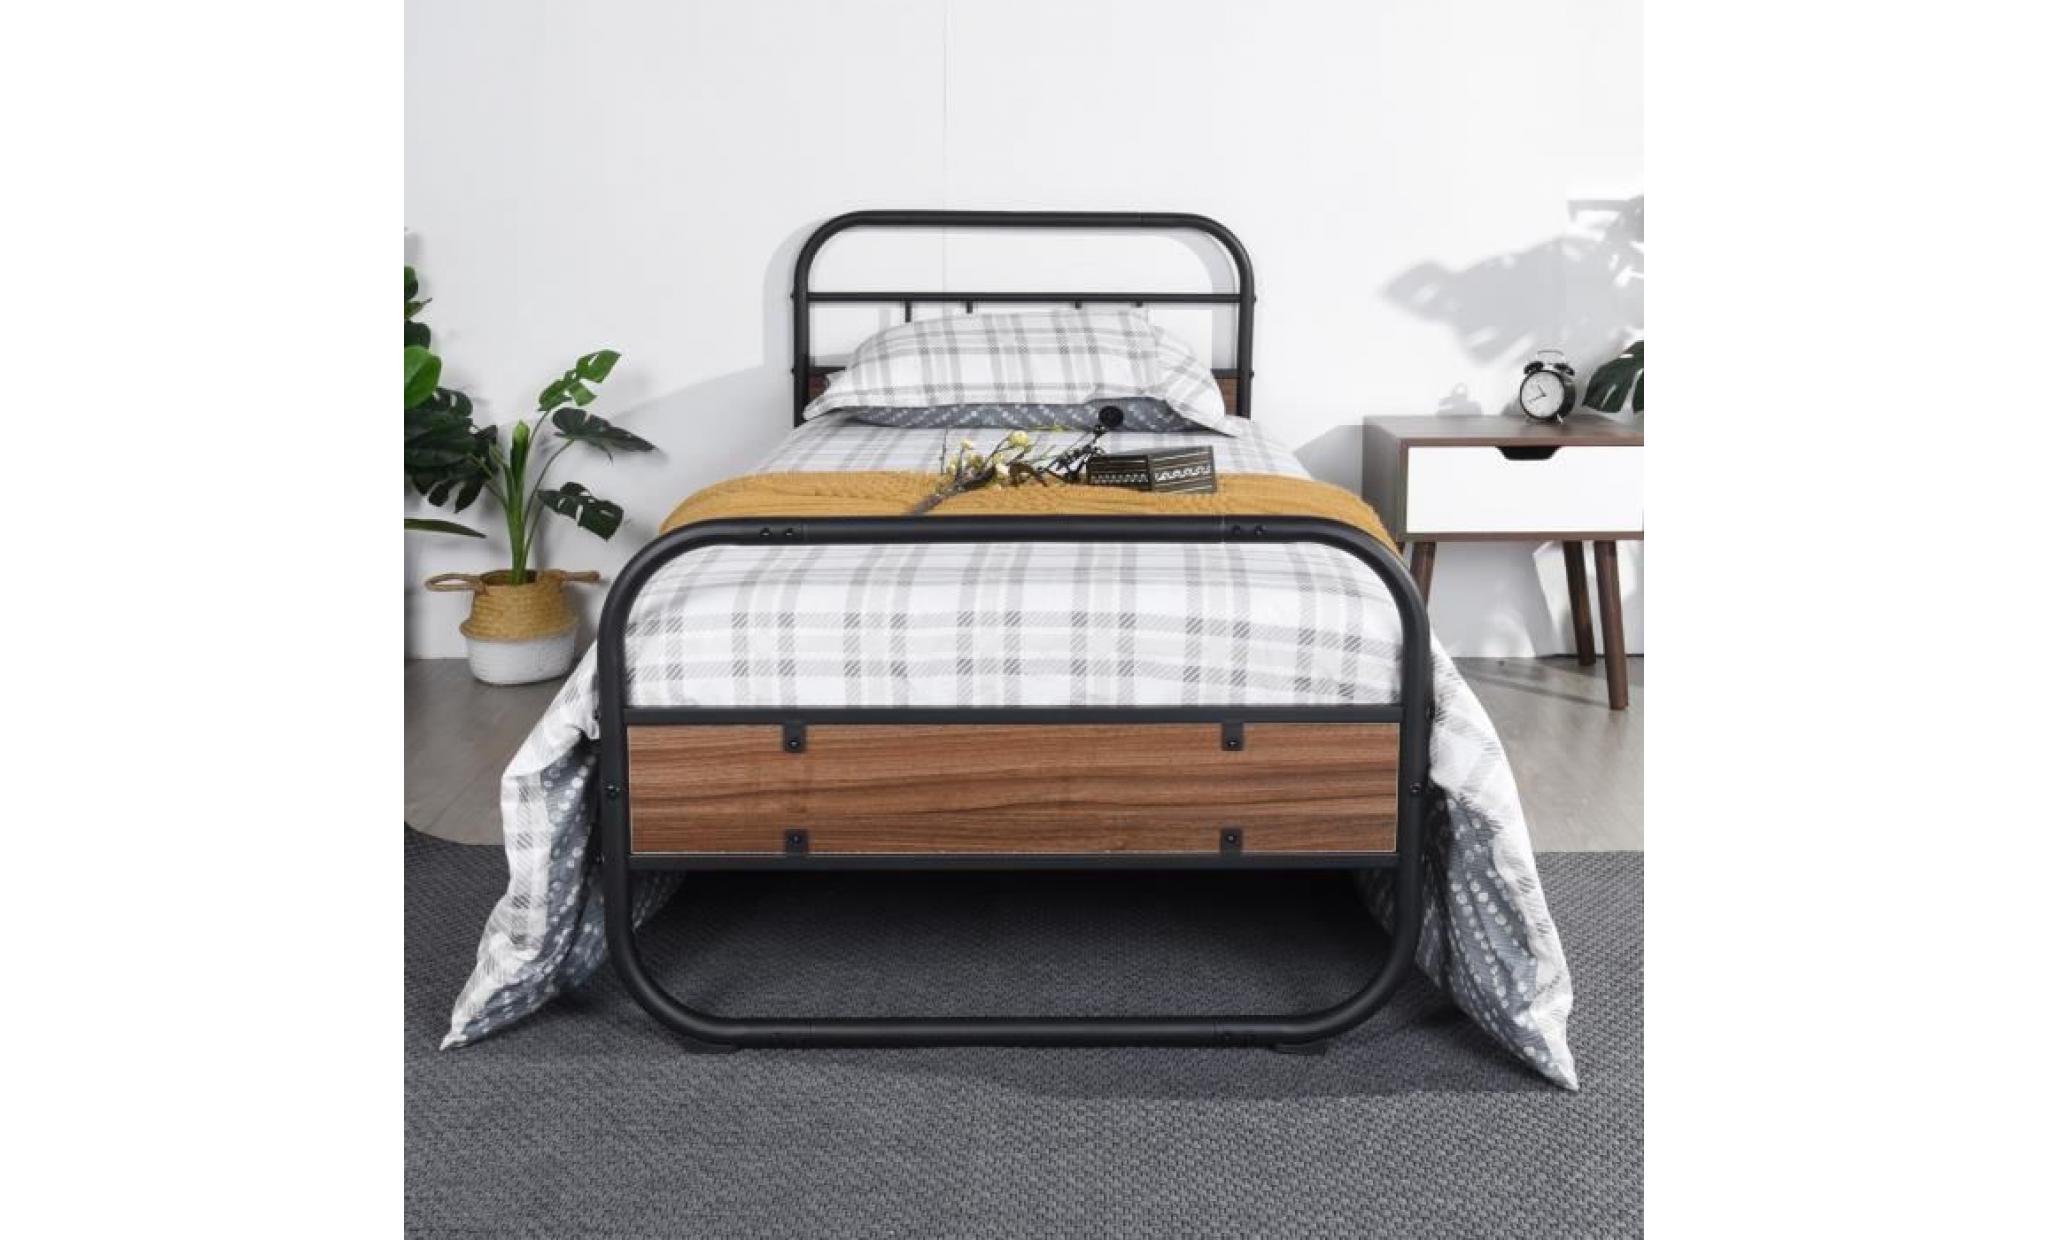 aingoo lit simple cadre en métal massif avec tête de lit en bois et pied de lit pour adultes enfants pour 90 * 190 cm matelas, noir